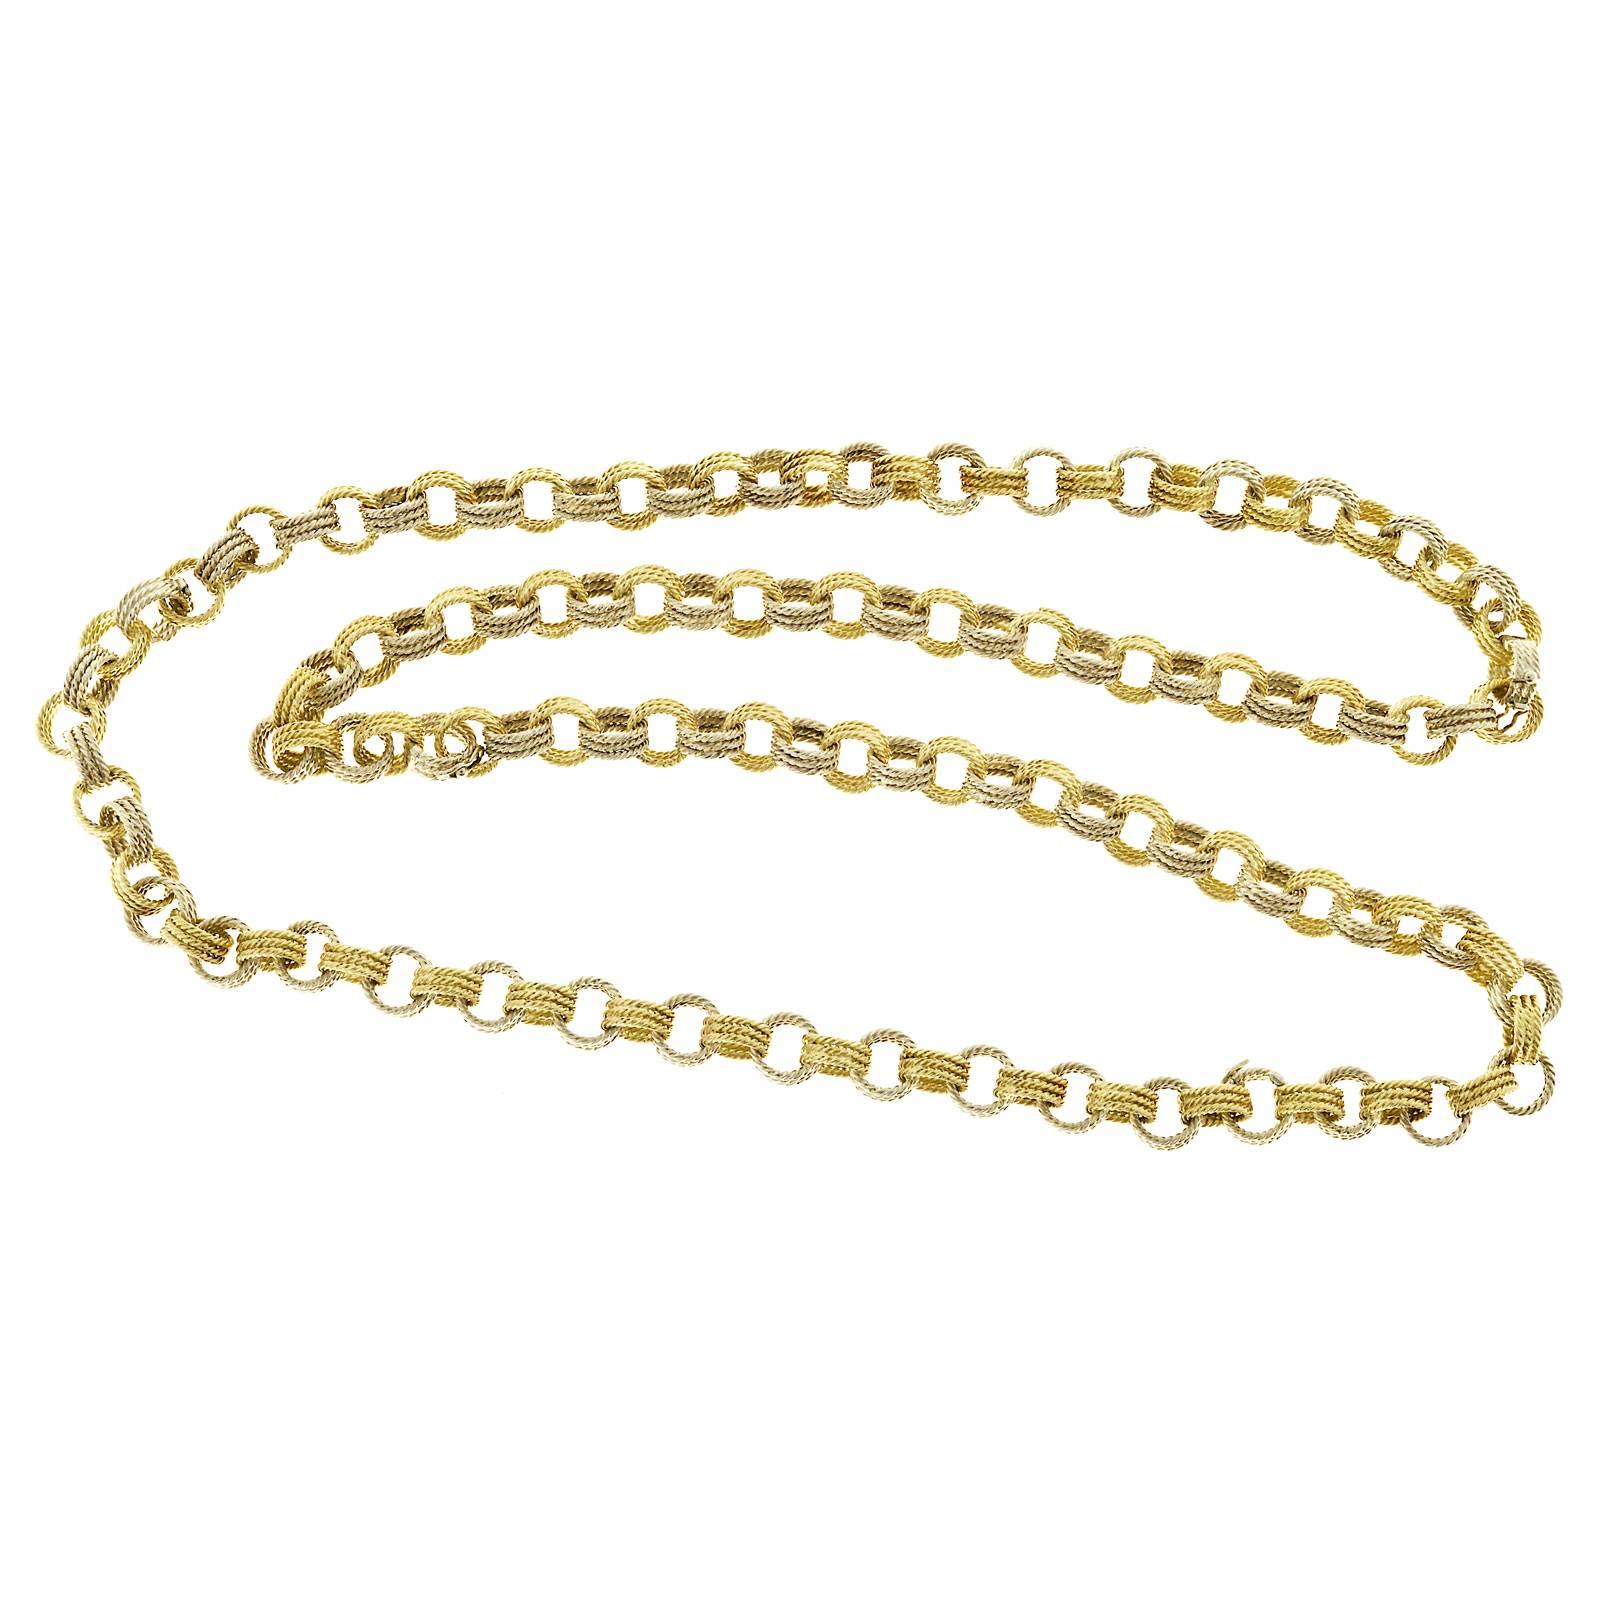 Handmade 2 Color Gold Wire Link Necklace Bracelet 3